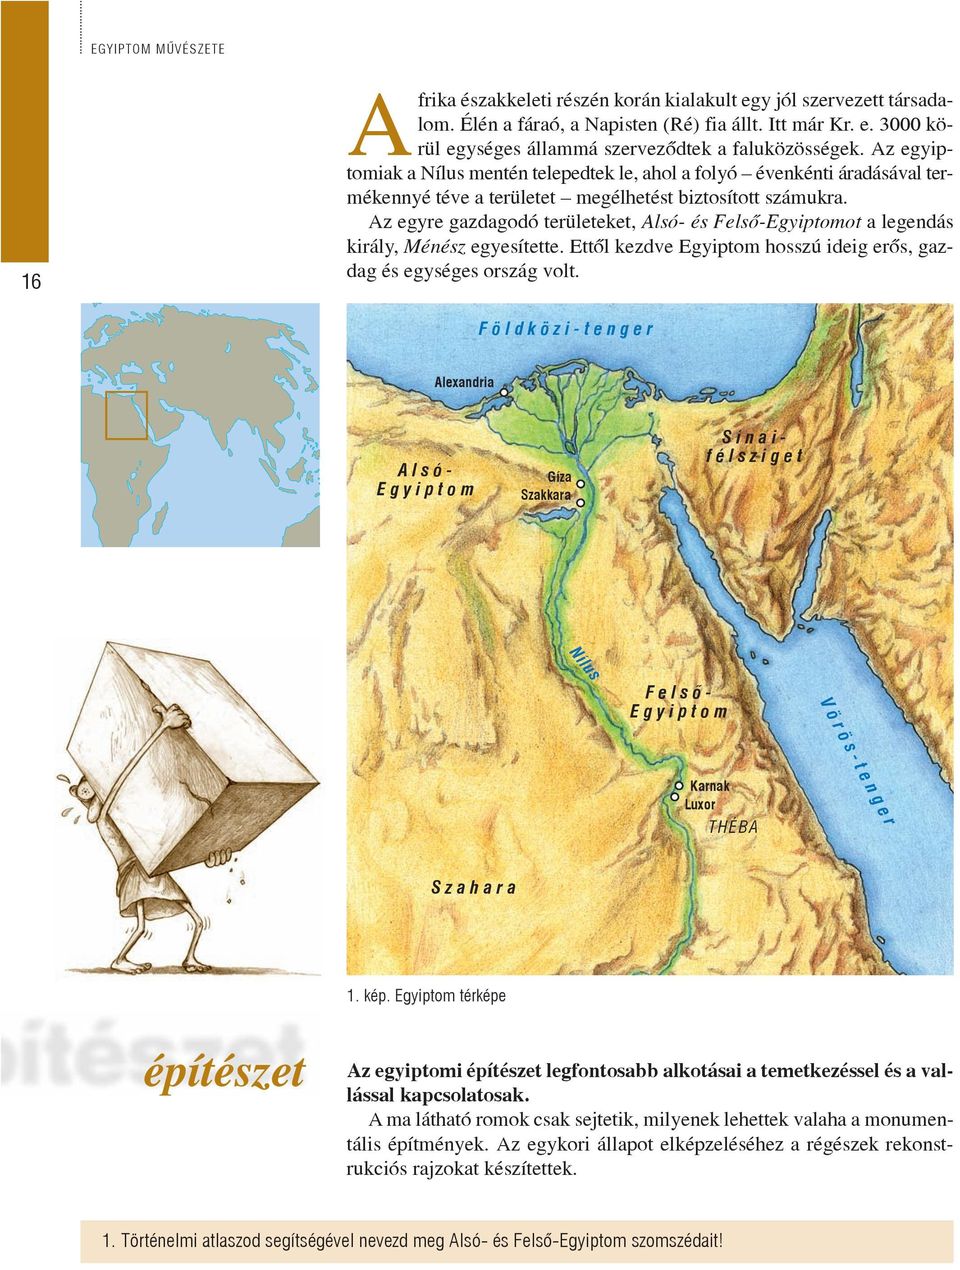 Az egyre gazdagodó területeket, Alsó- és Felsõ-Egyiptomot a legendás király, Ménész egyesítette. Ettõl kezdve Egyiptom hosszú ideig erõs, gazdag és egységes ország volt.